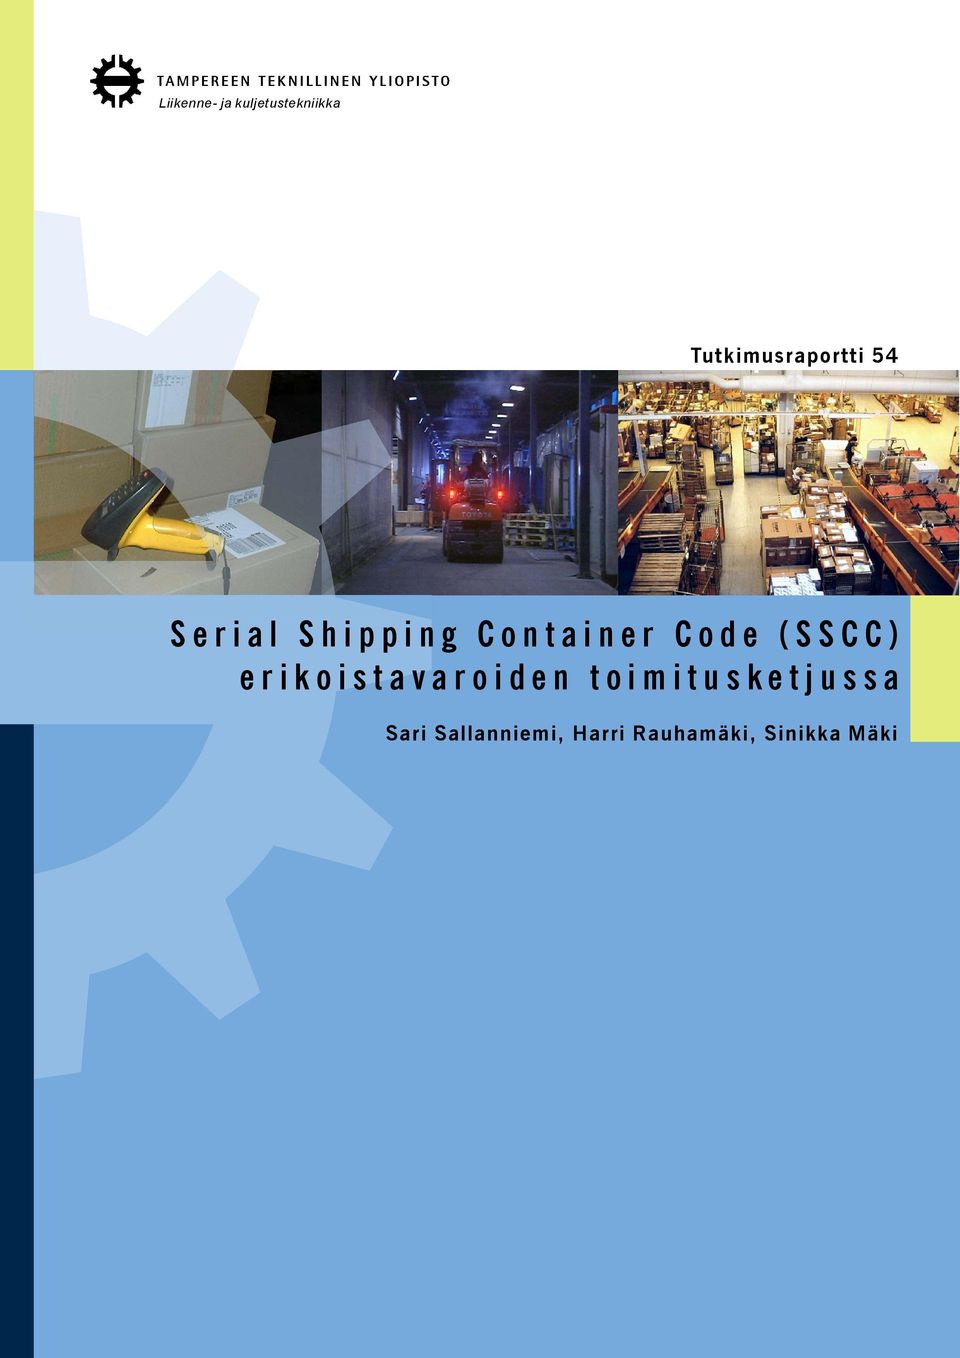 Container Code (SSCC) erikoistavaroiden